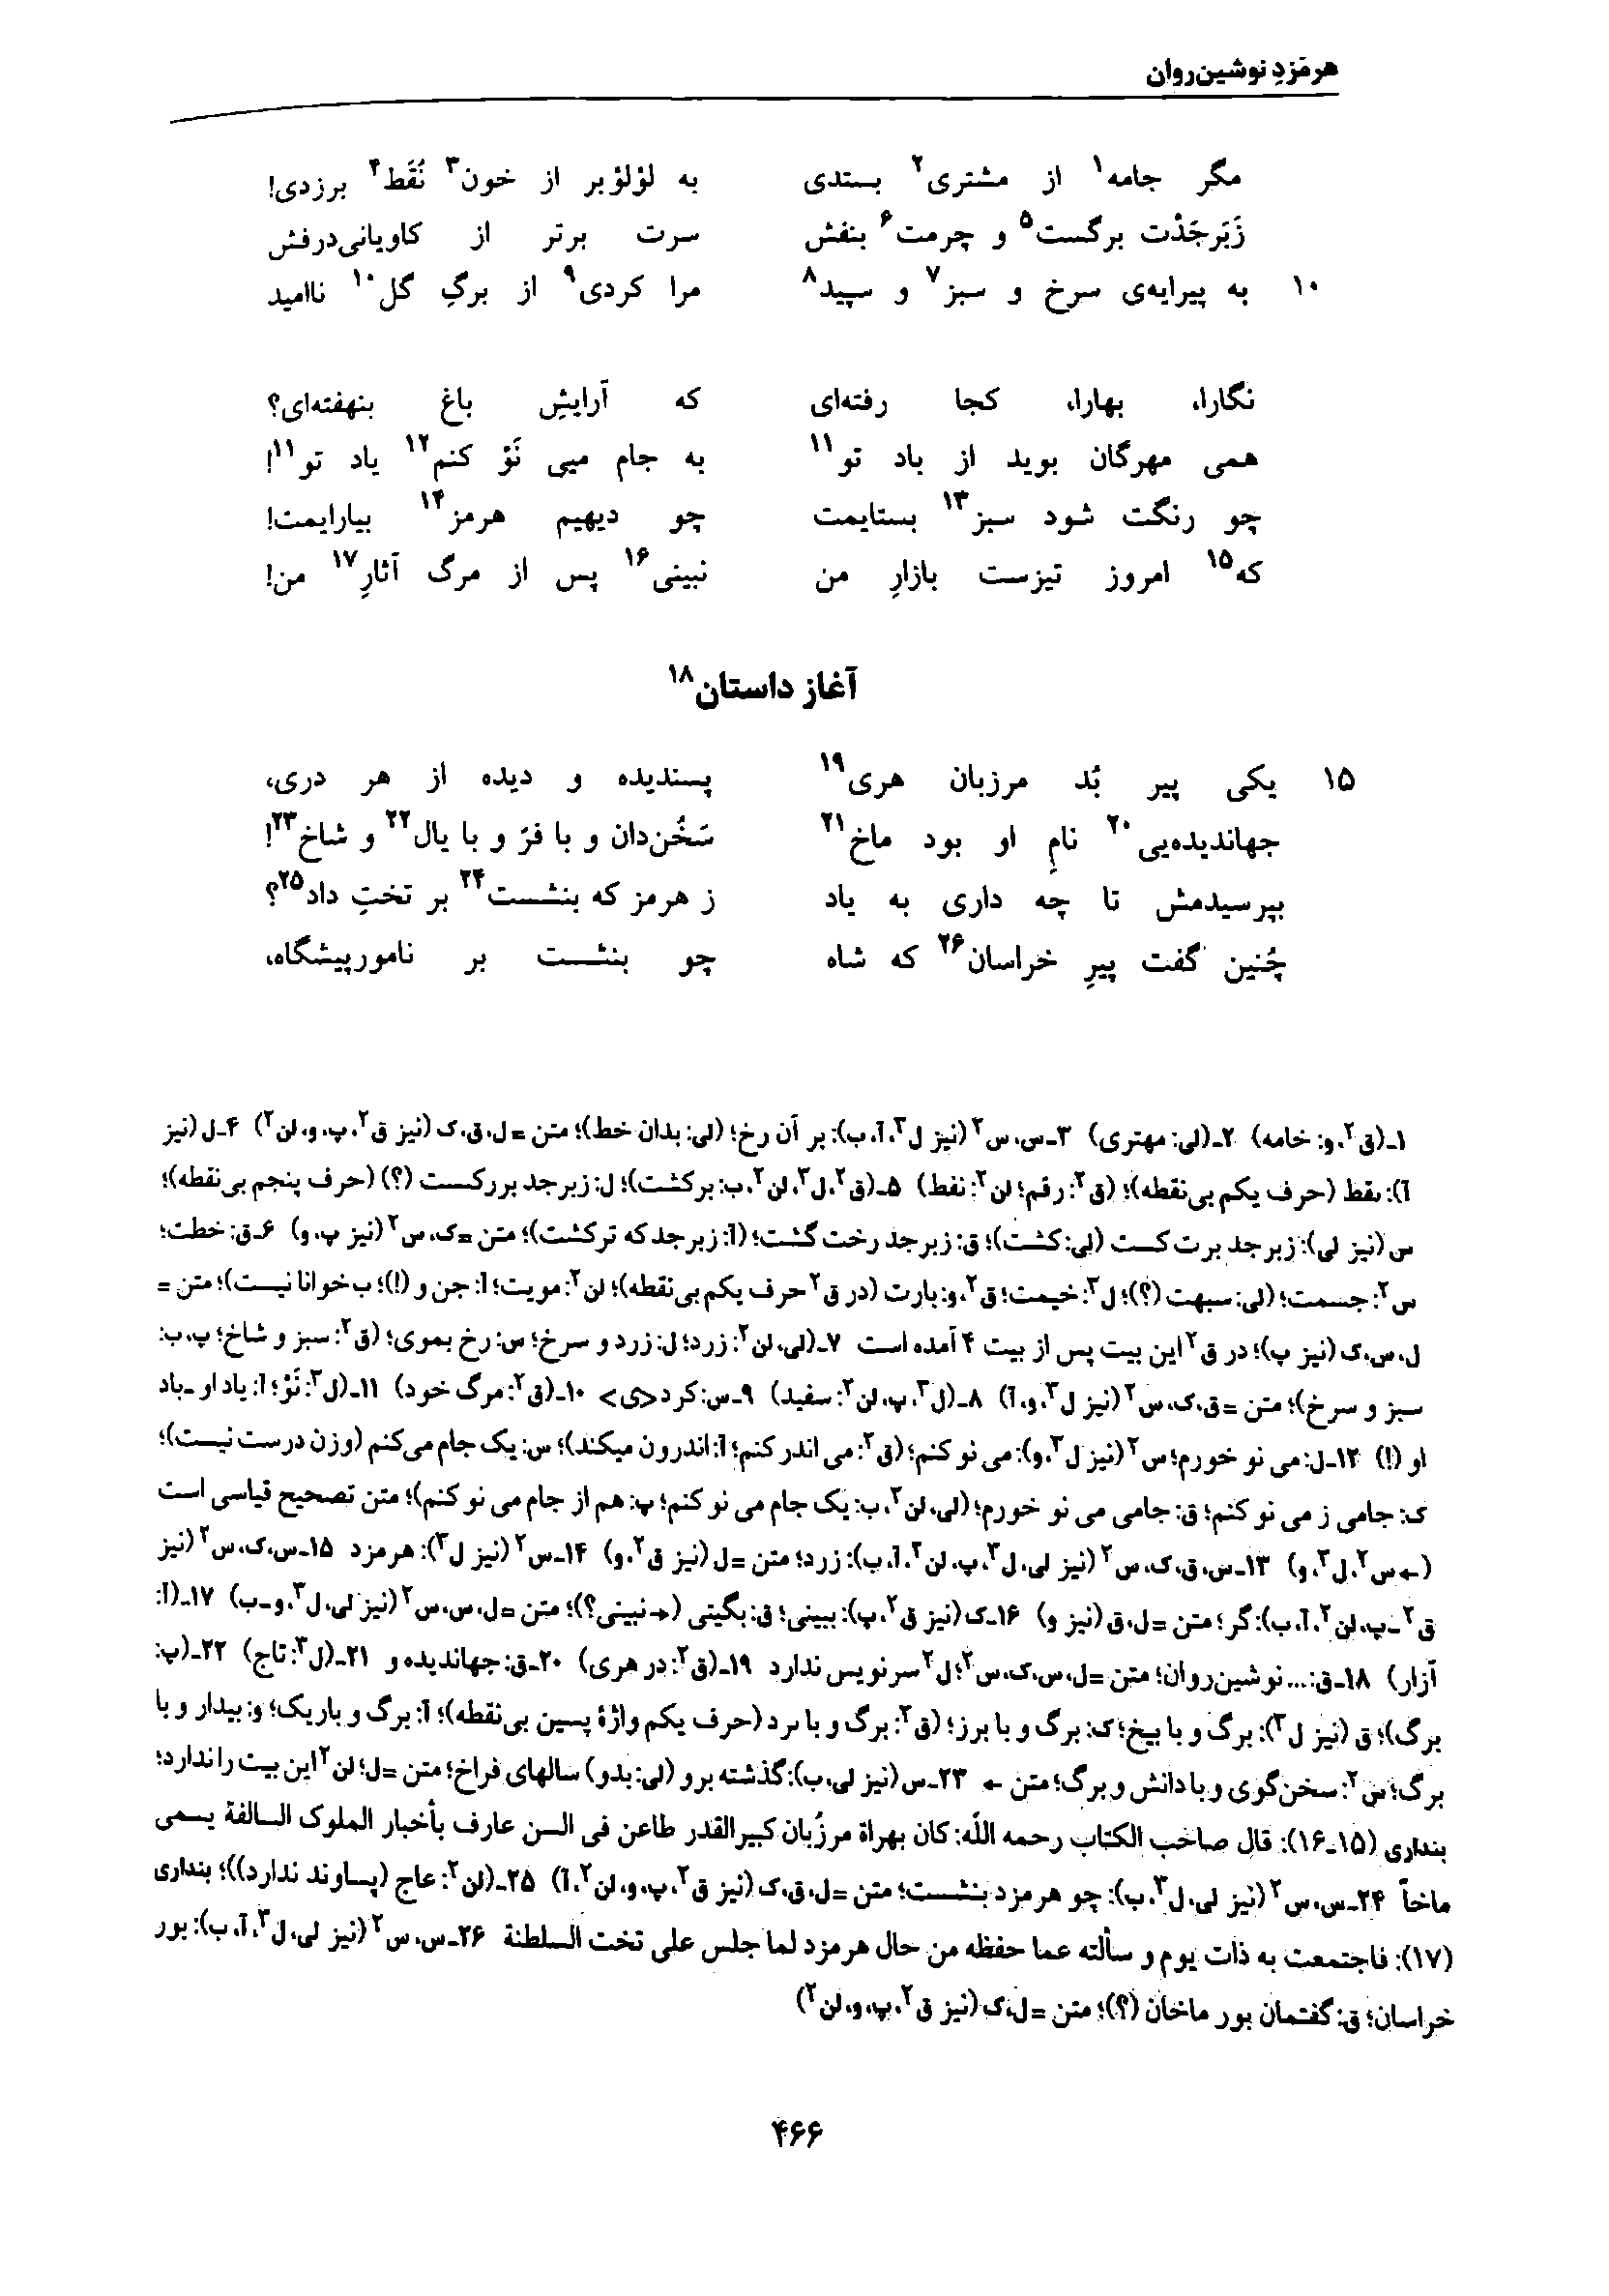 vol. 7, p. 466